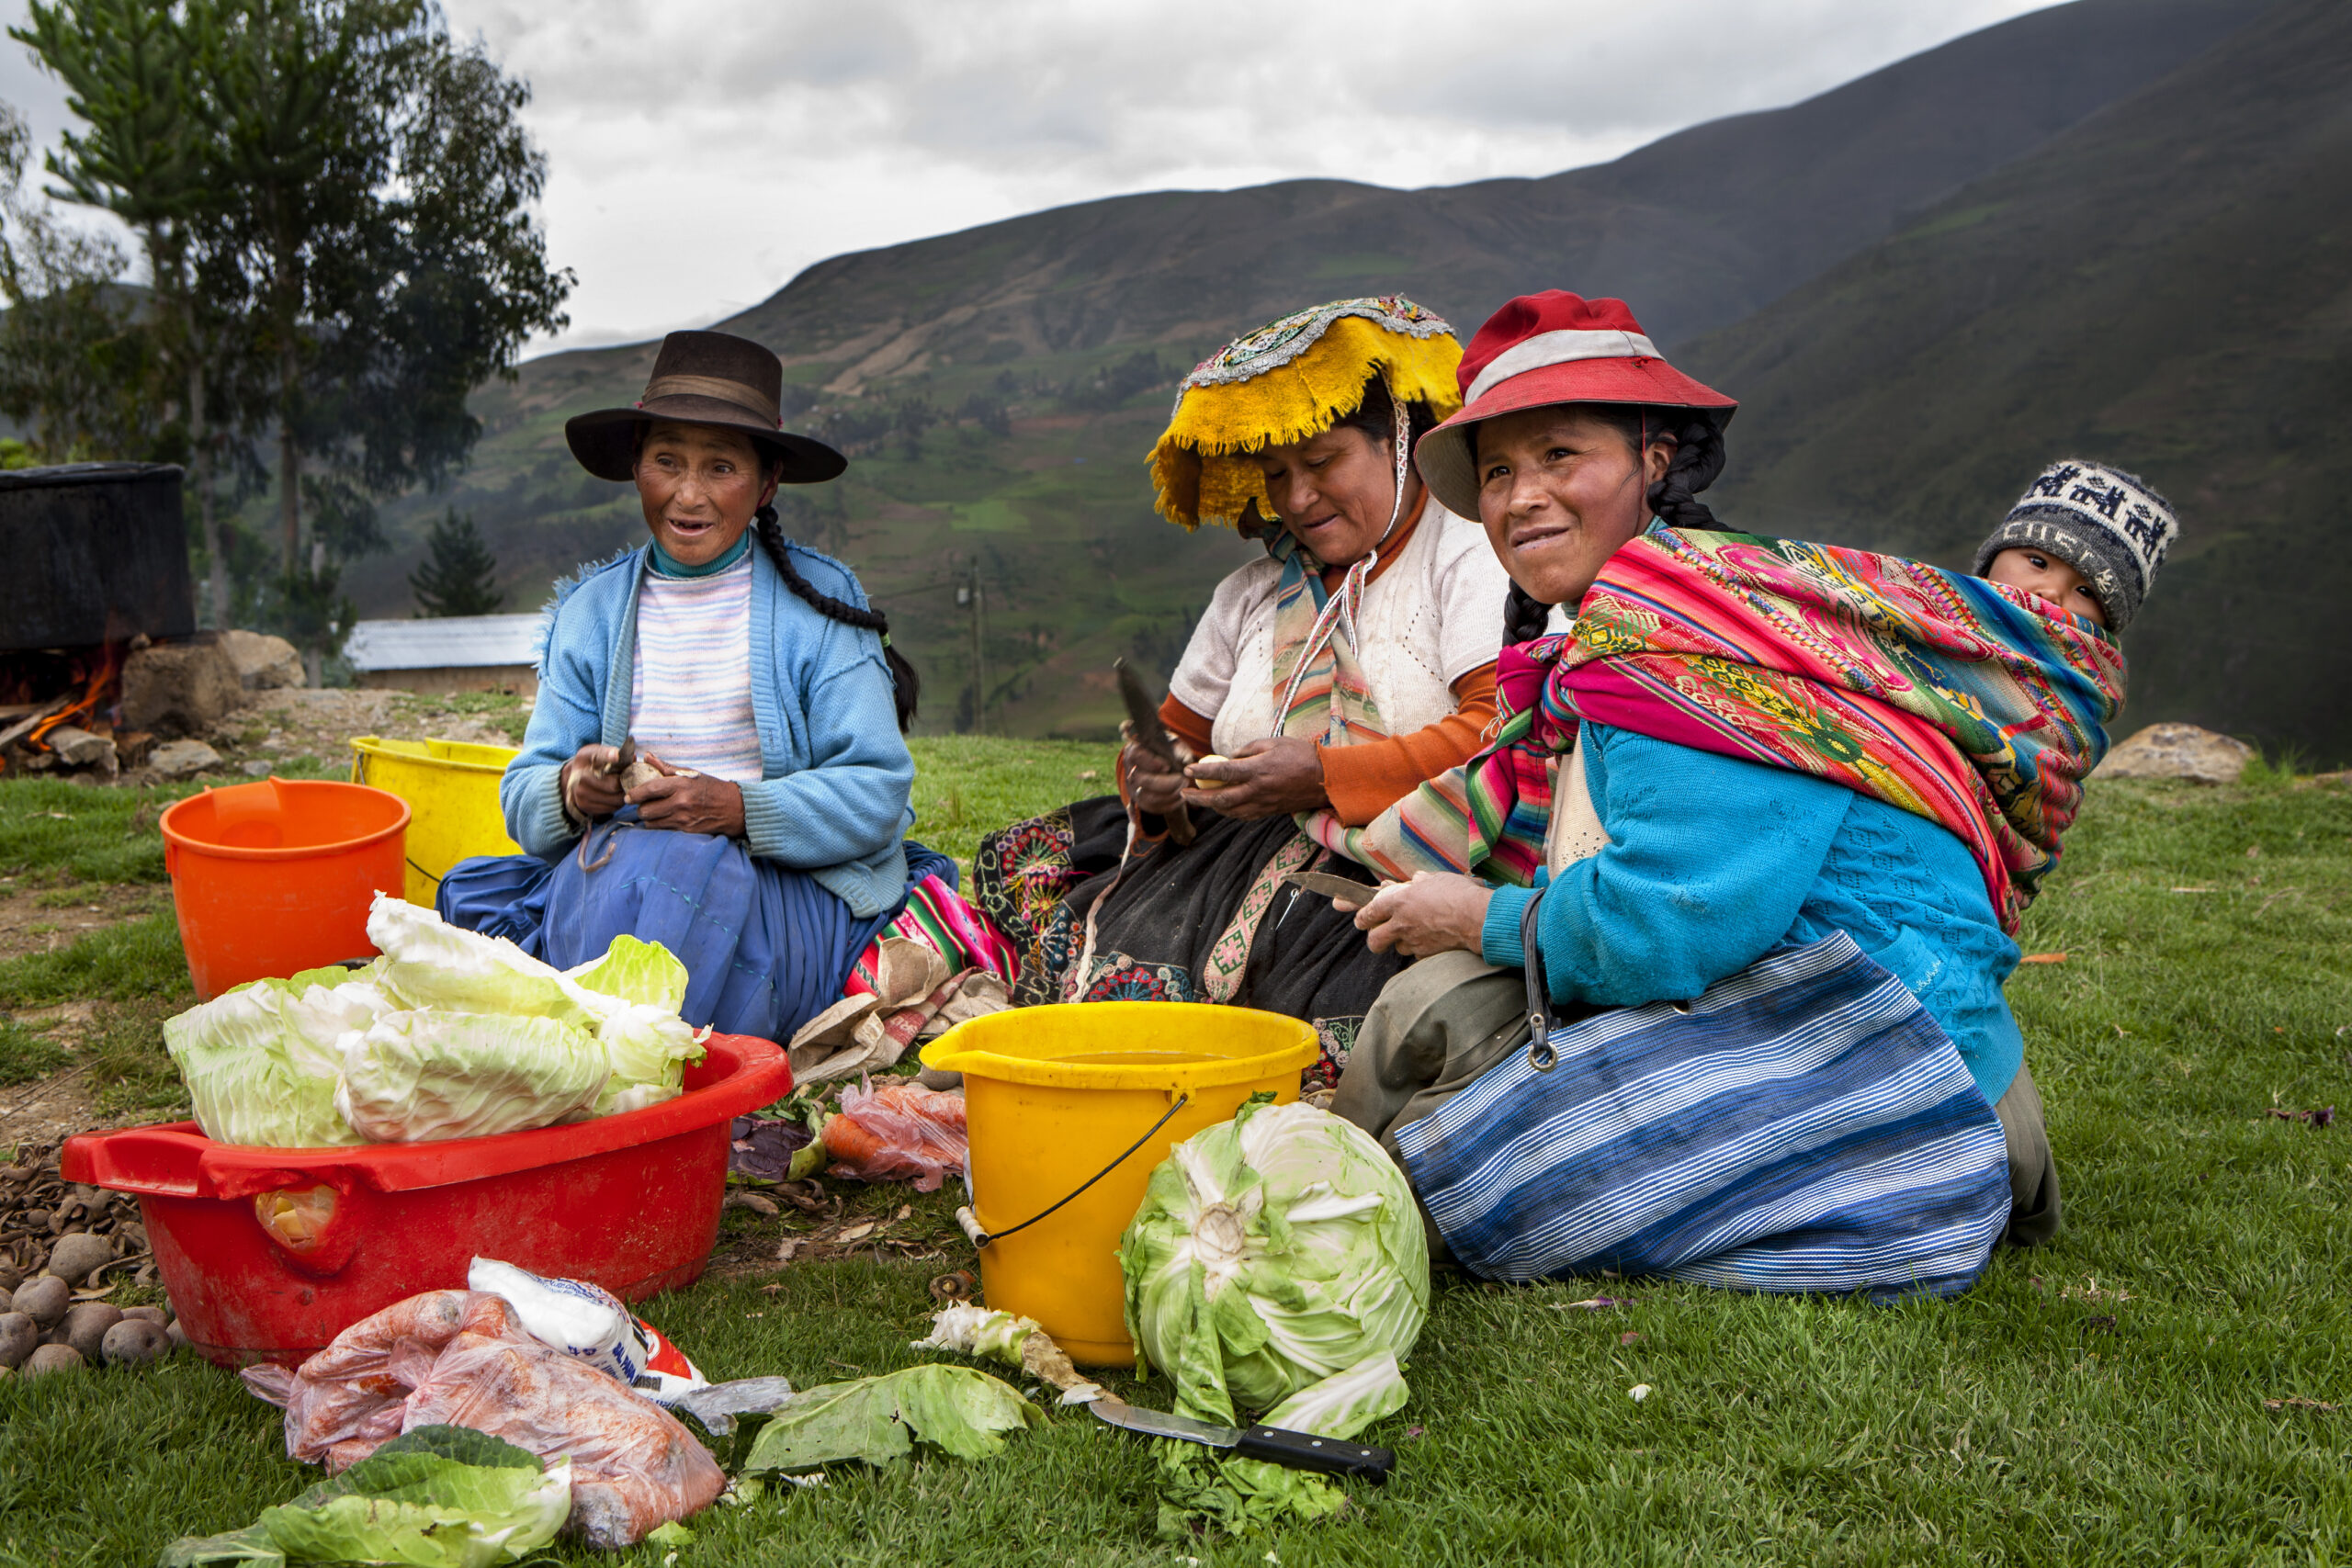 GNO0455_Anbau von Obst und Gemüse_Plan International_Vania Milanovitch_Bild stammt aus einem ähnlichen Plan-Projekt in Peru